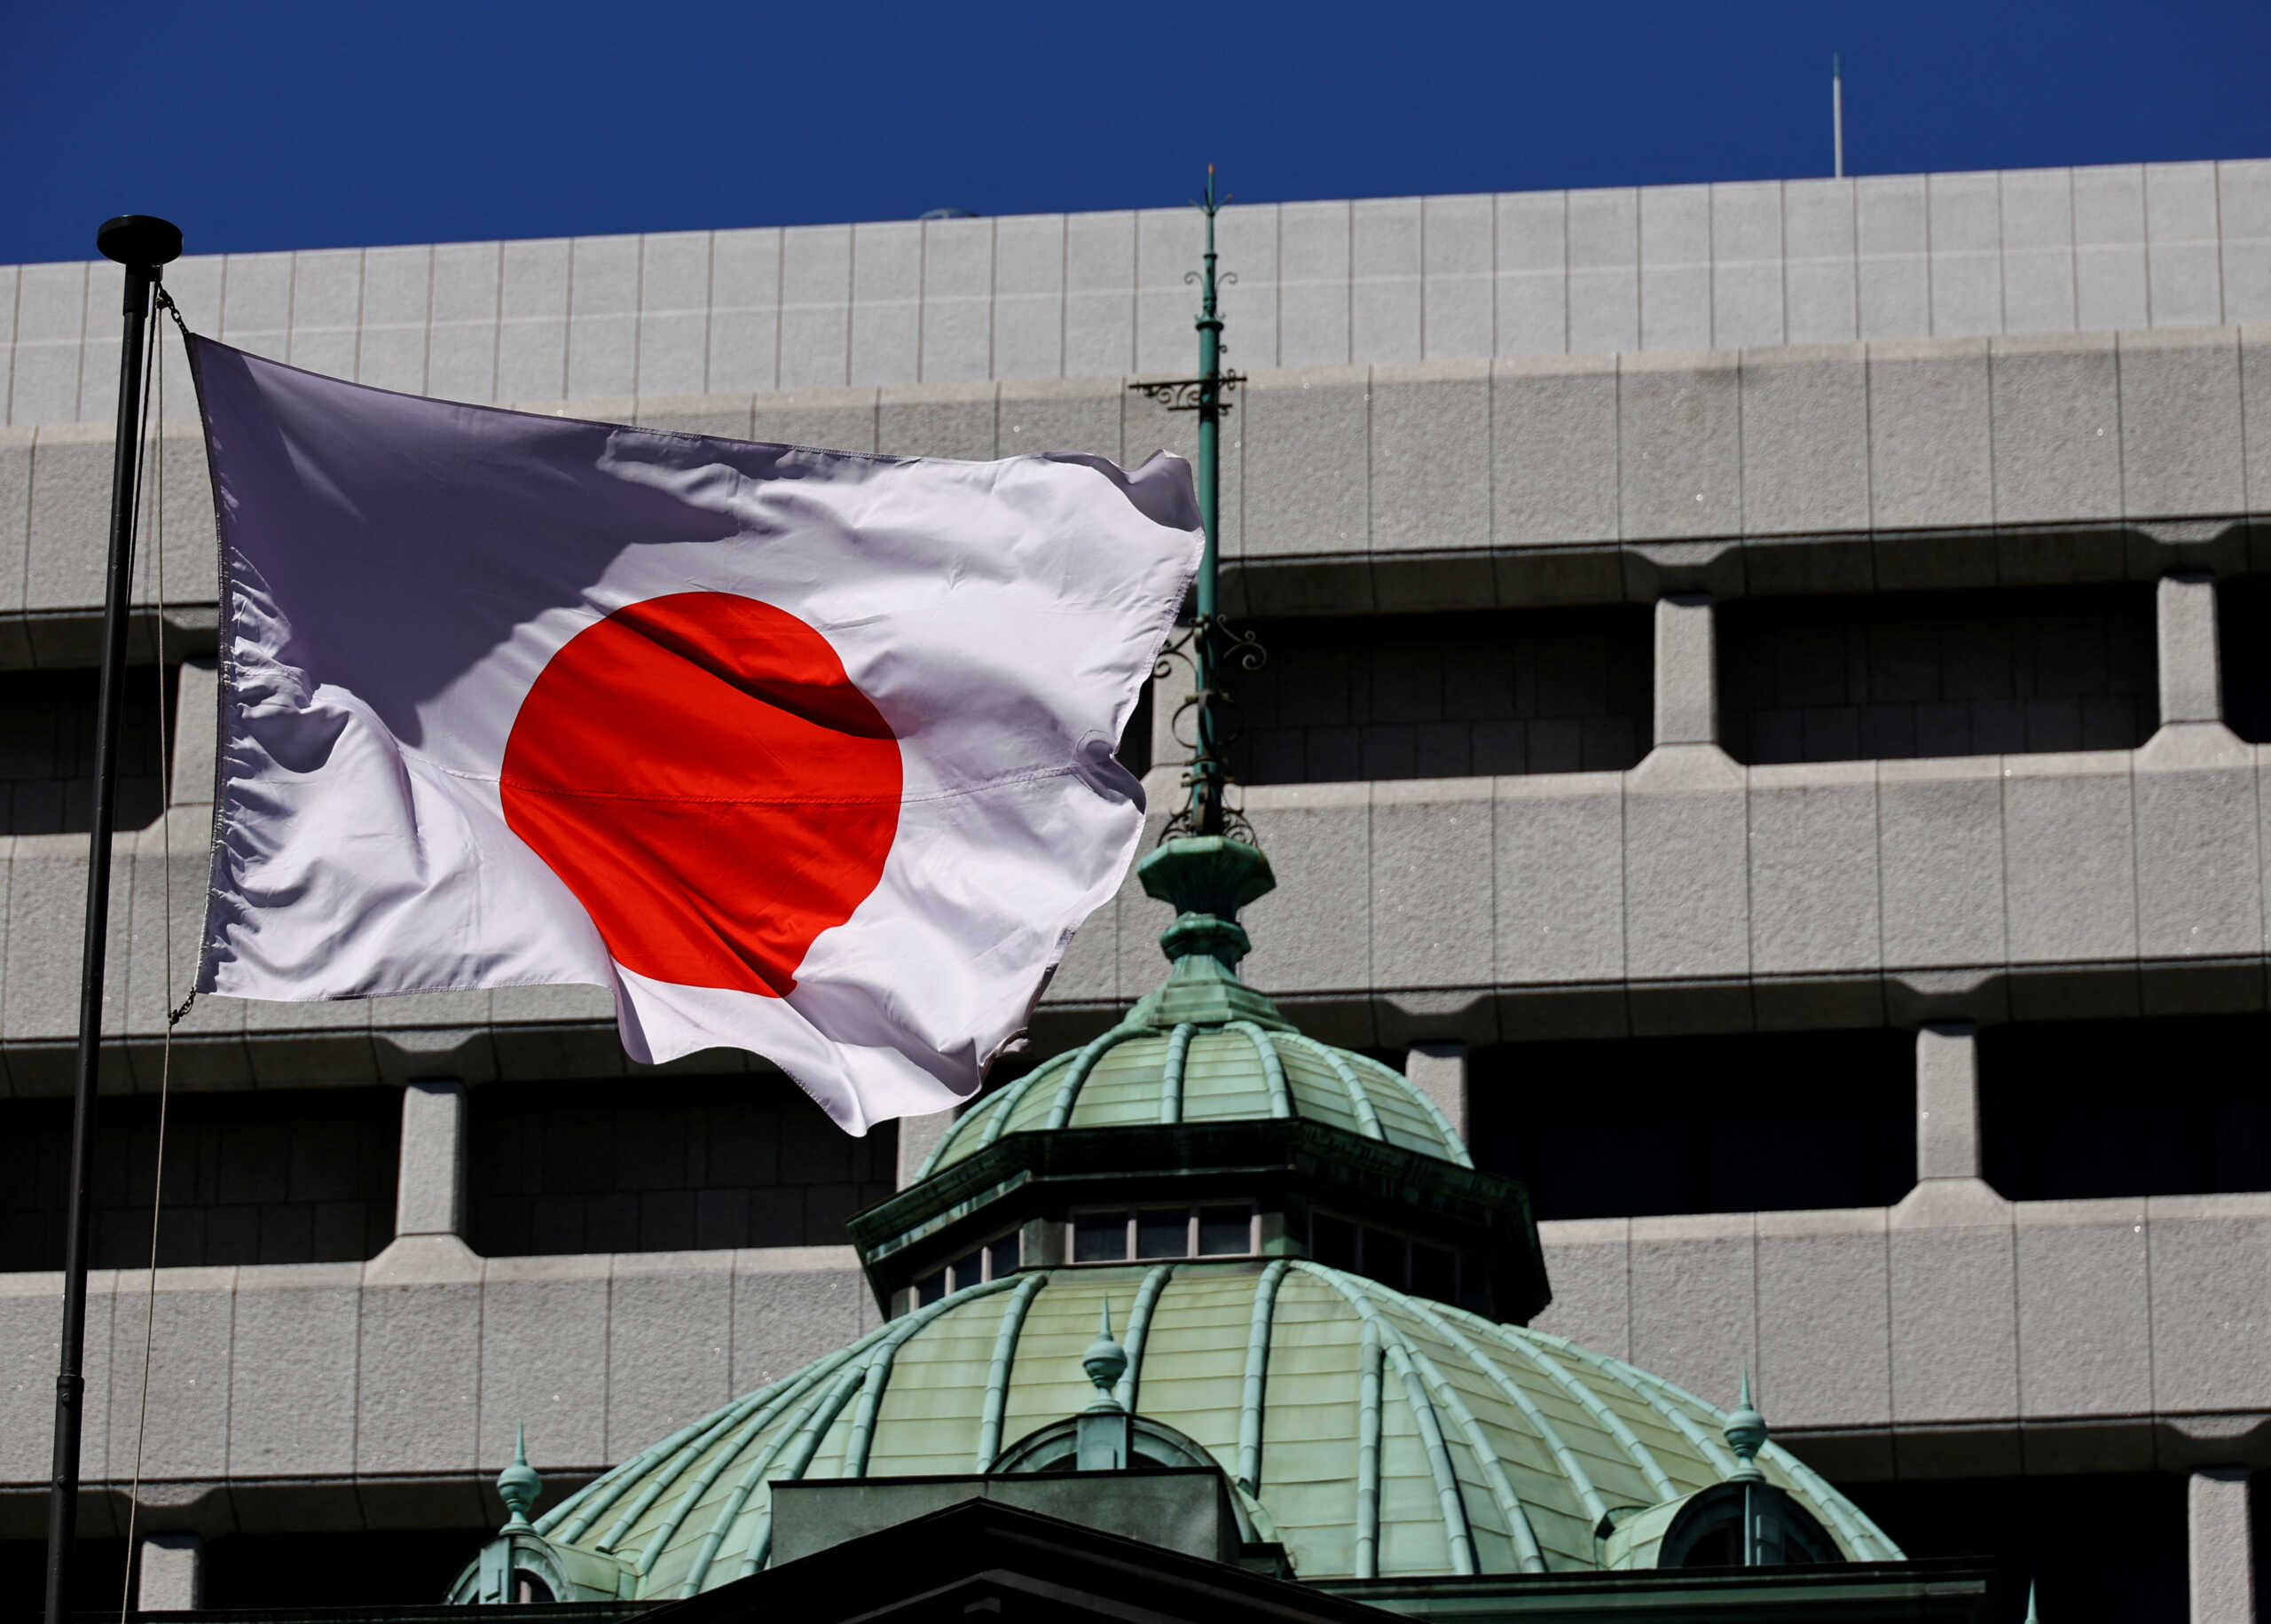 Η υποτίμηση του γιεν εκθρονίζει το ιαπωνικό συνταξιοδοτικό ταμείο από τη θέση του μεγαλύτερου ασφαλιστικού κουμπαρά στον κόσμο